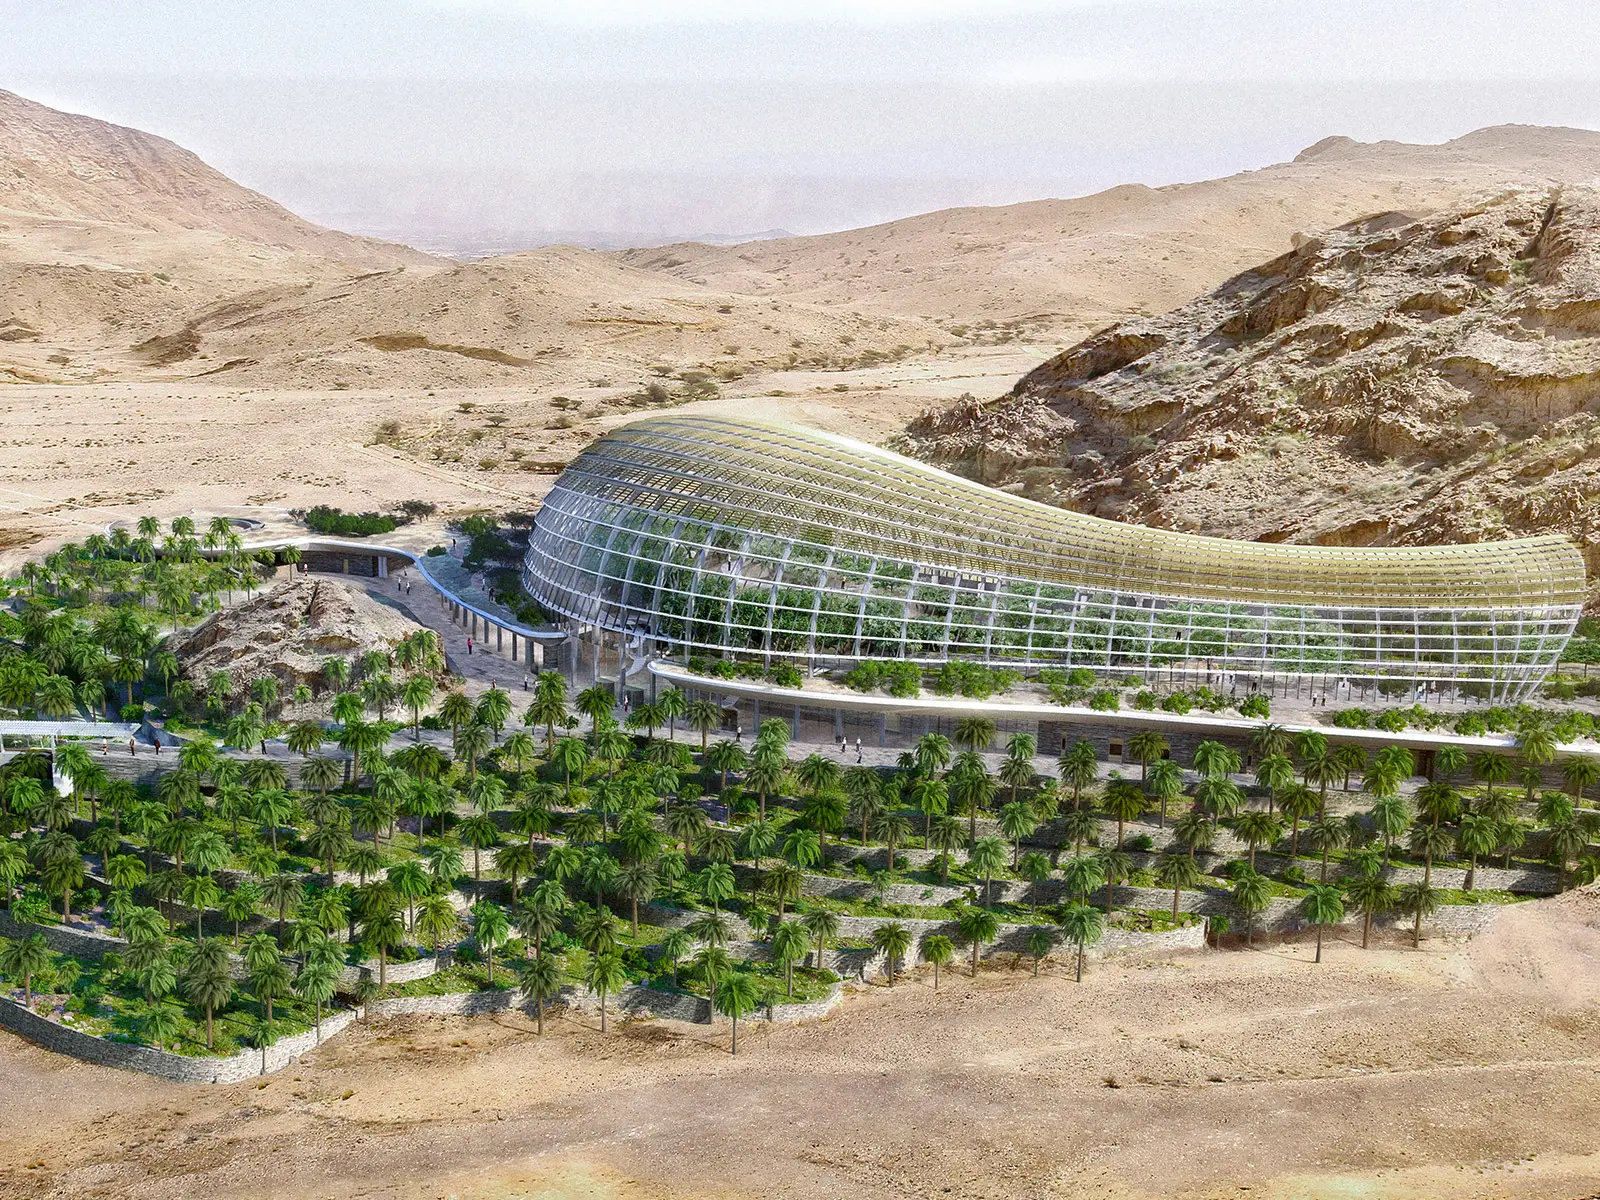 Il giardino botanico piu grande del mondo sorgera nel deserto